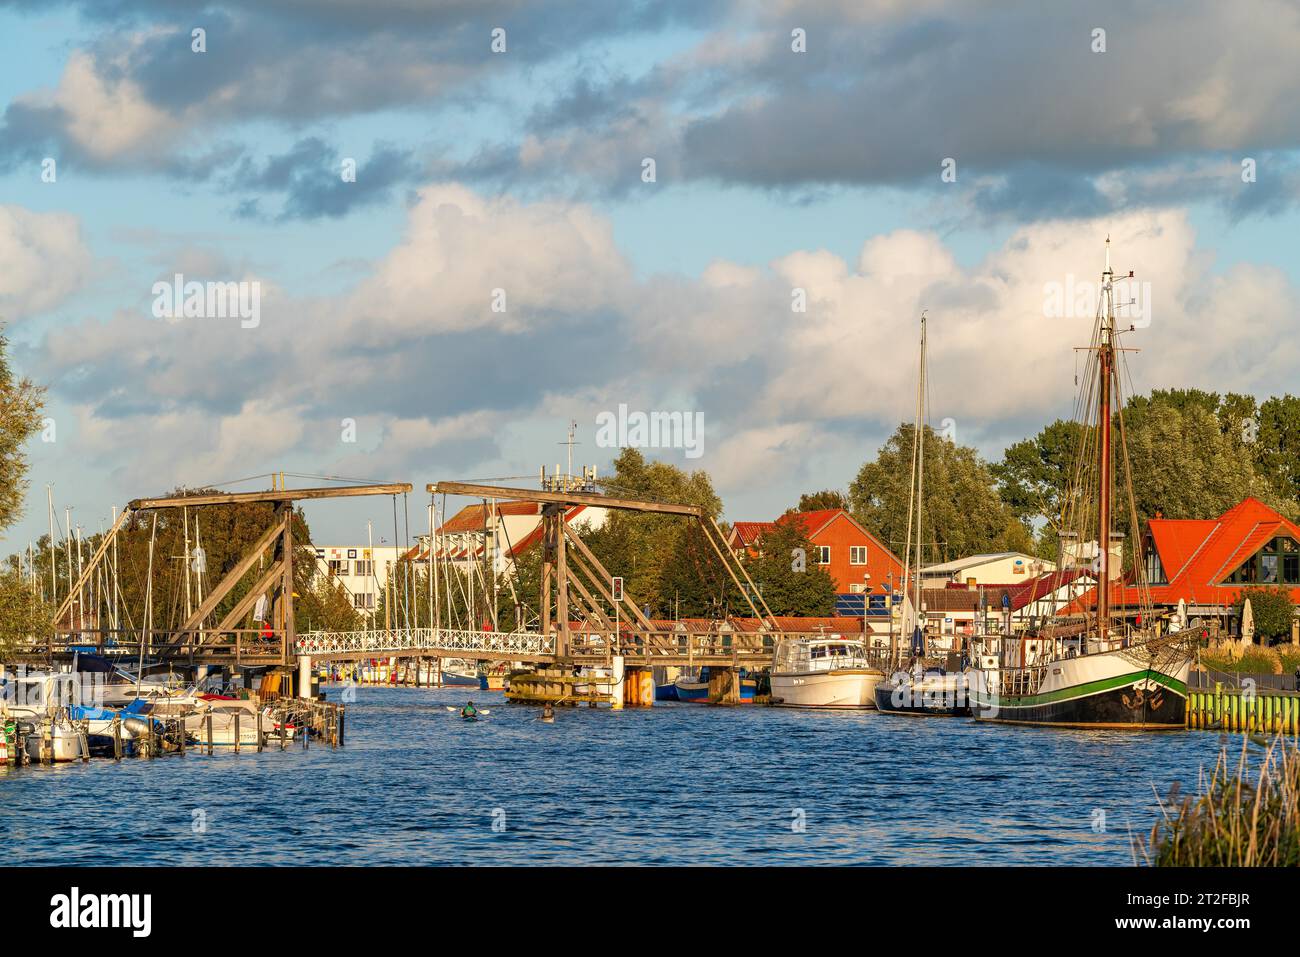 Historische Wieck hölzerne Klappbrücke über den Fluss Ryck und Segelschiffe im Hafen des Fischerdorfes Wieck, Greifswald Stockfoto